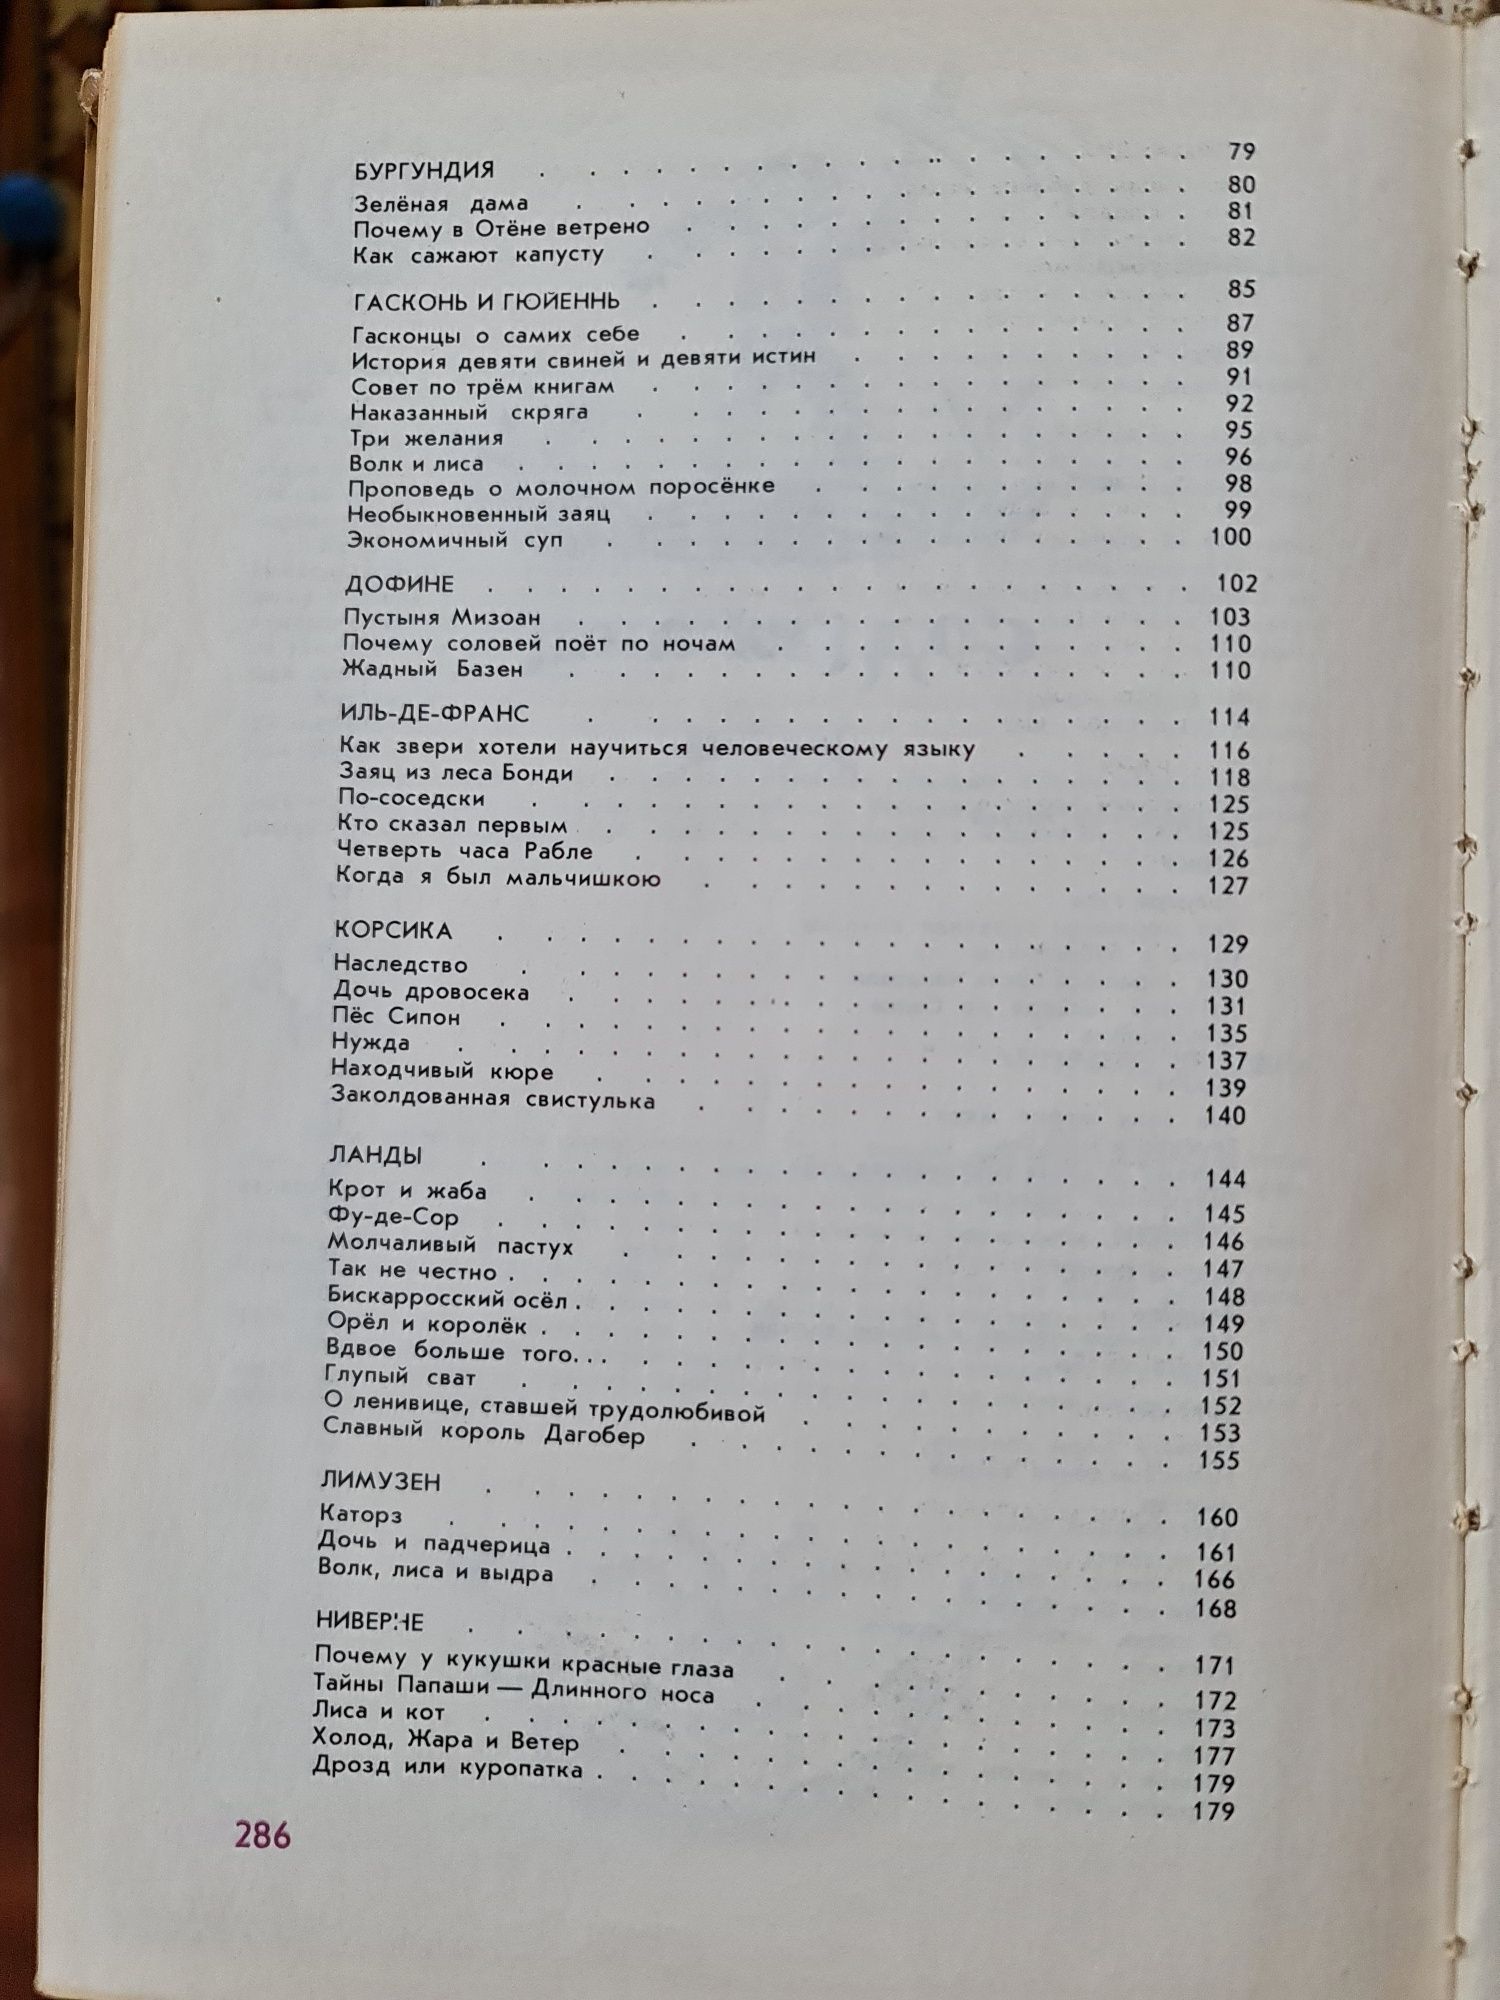 Галльский петух рассказывает 1978 Сборник французского фольклора